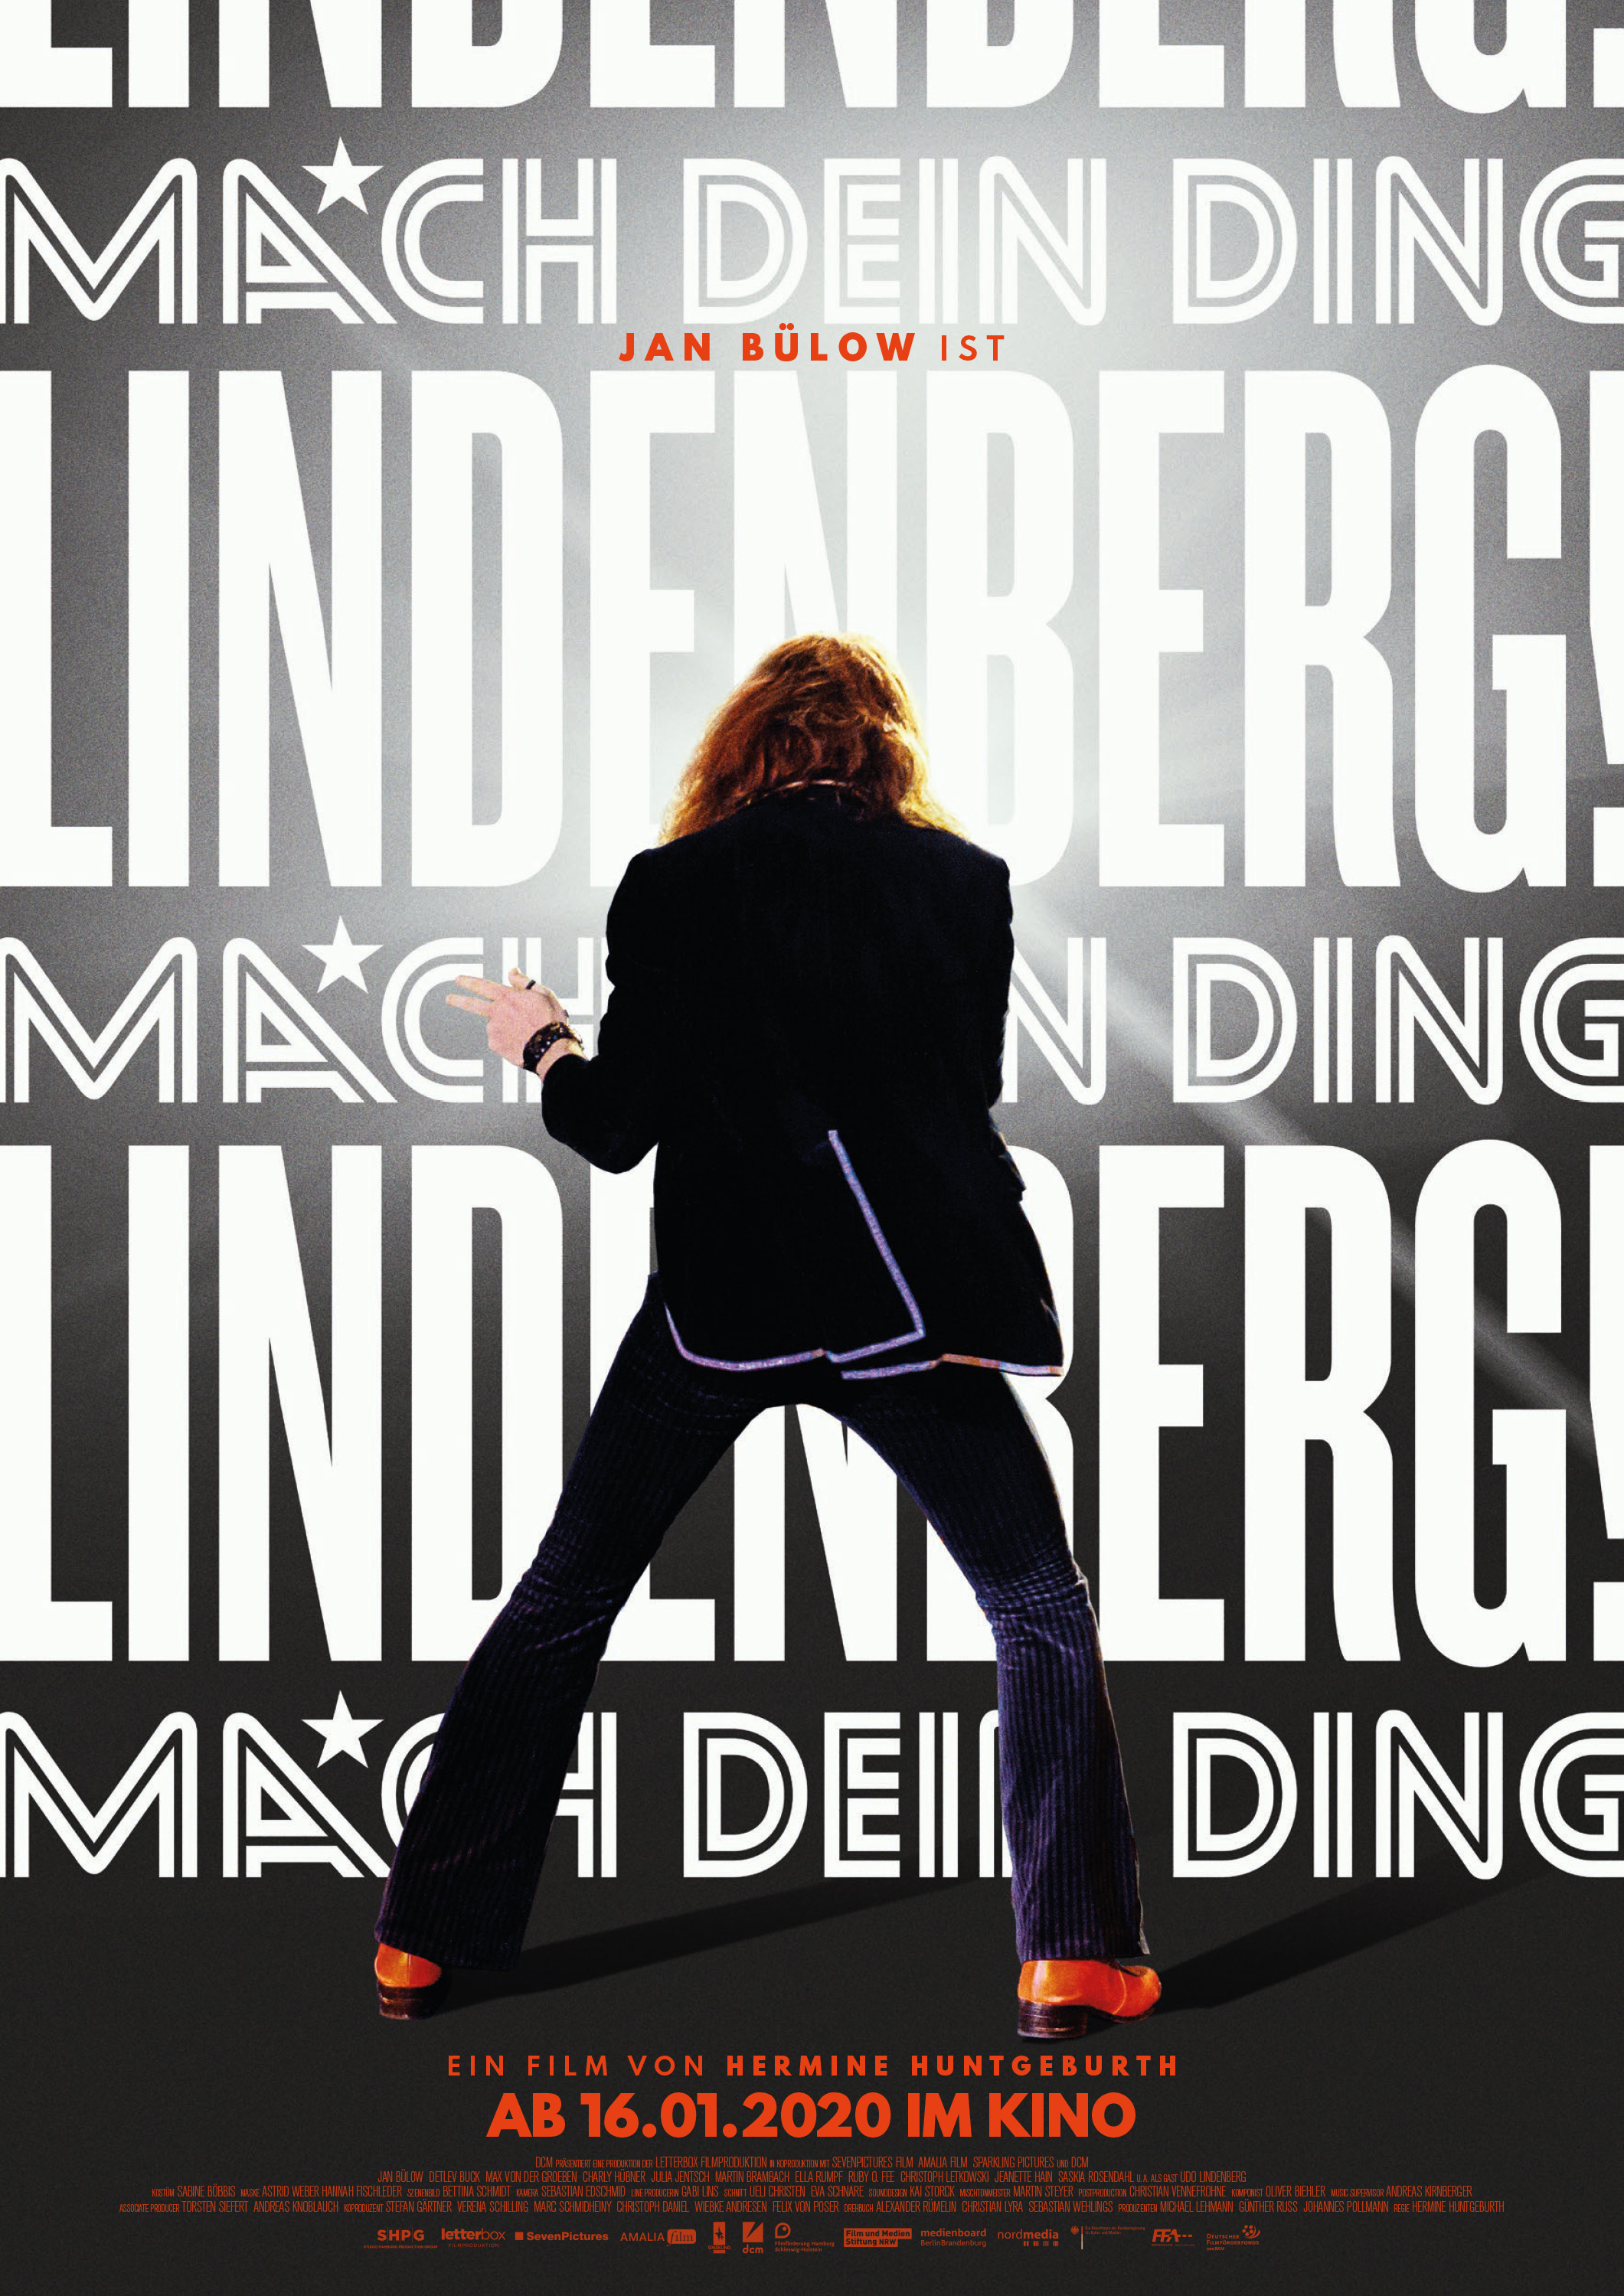 Mega Sized Movie Poster Image for Lindenberg! Mach dein Ding 